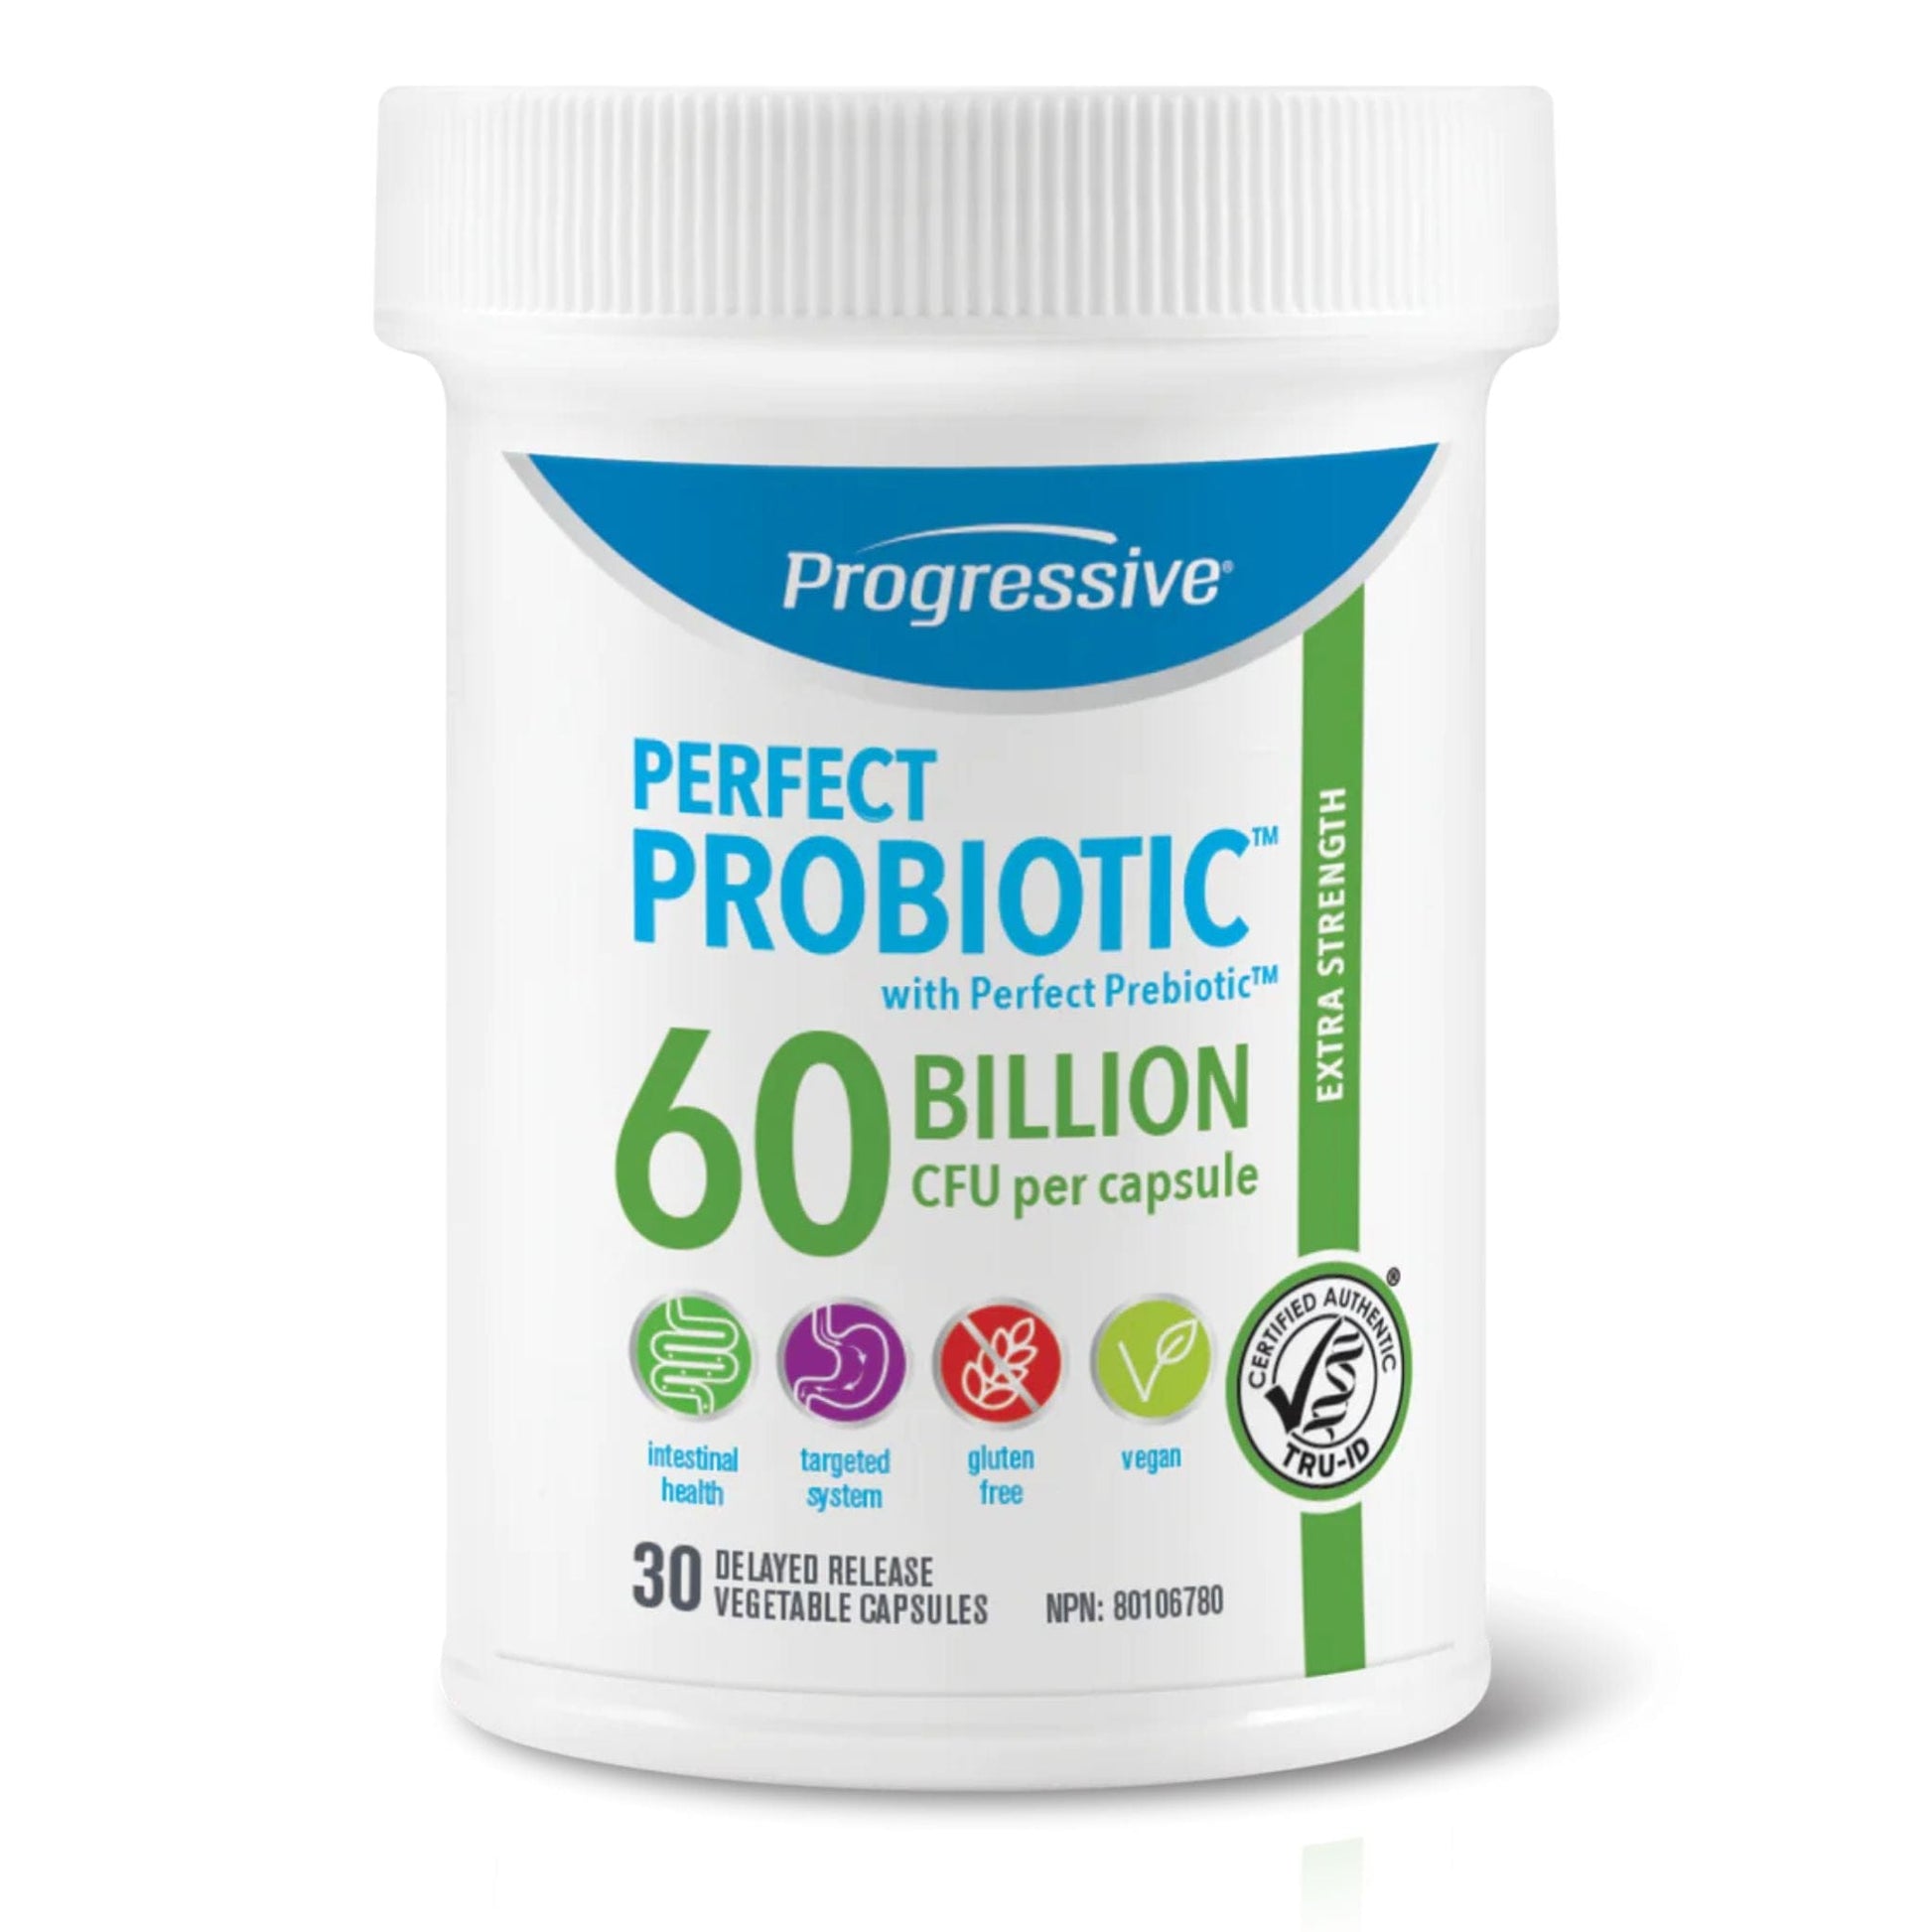 30 Delayed Release Vegetable Capsules | Progressive Perfect Probiotic 60 Billion CFU Per Capsule 30 Delayed Release Vegetable Capsules